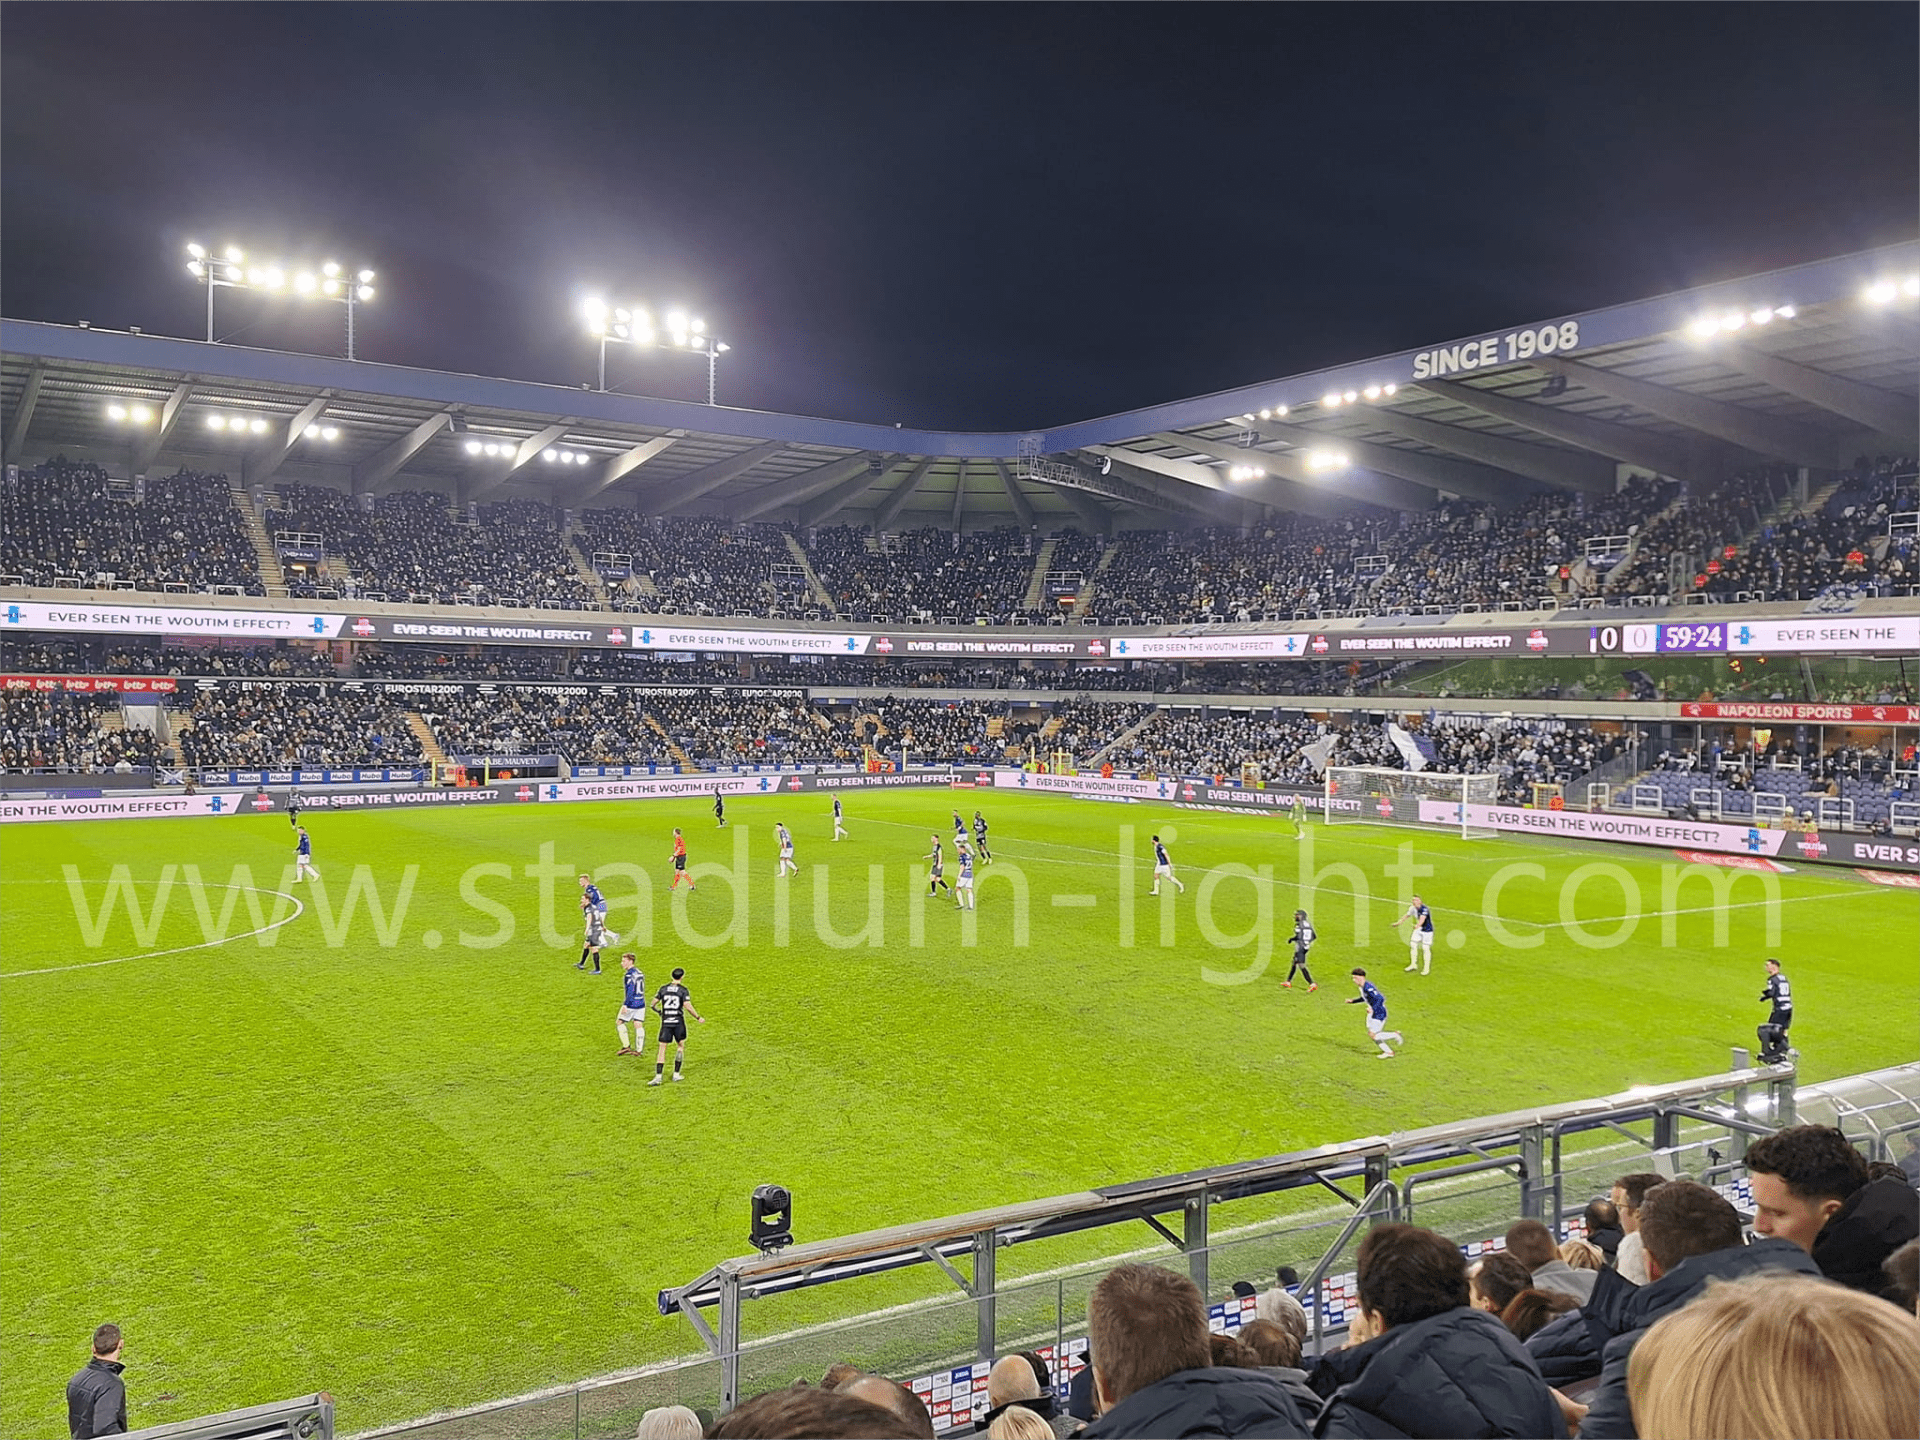 UEFA FOOTBALL STADIUM LIGHTING